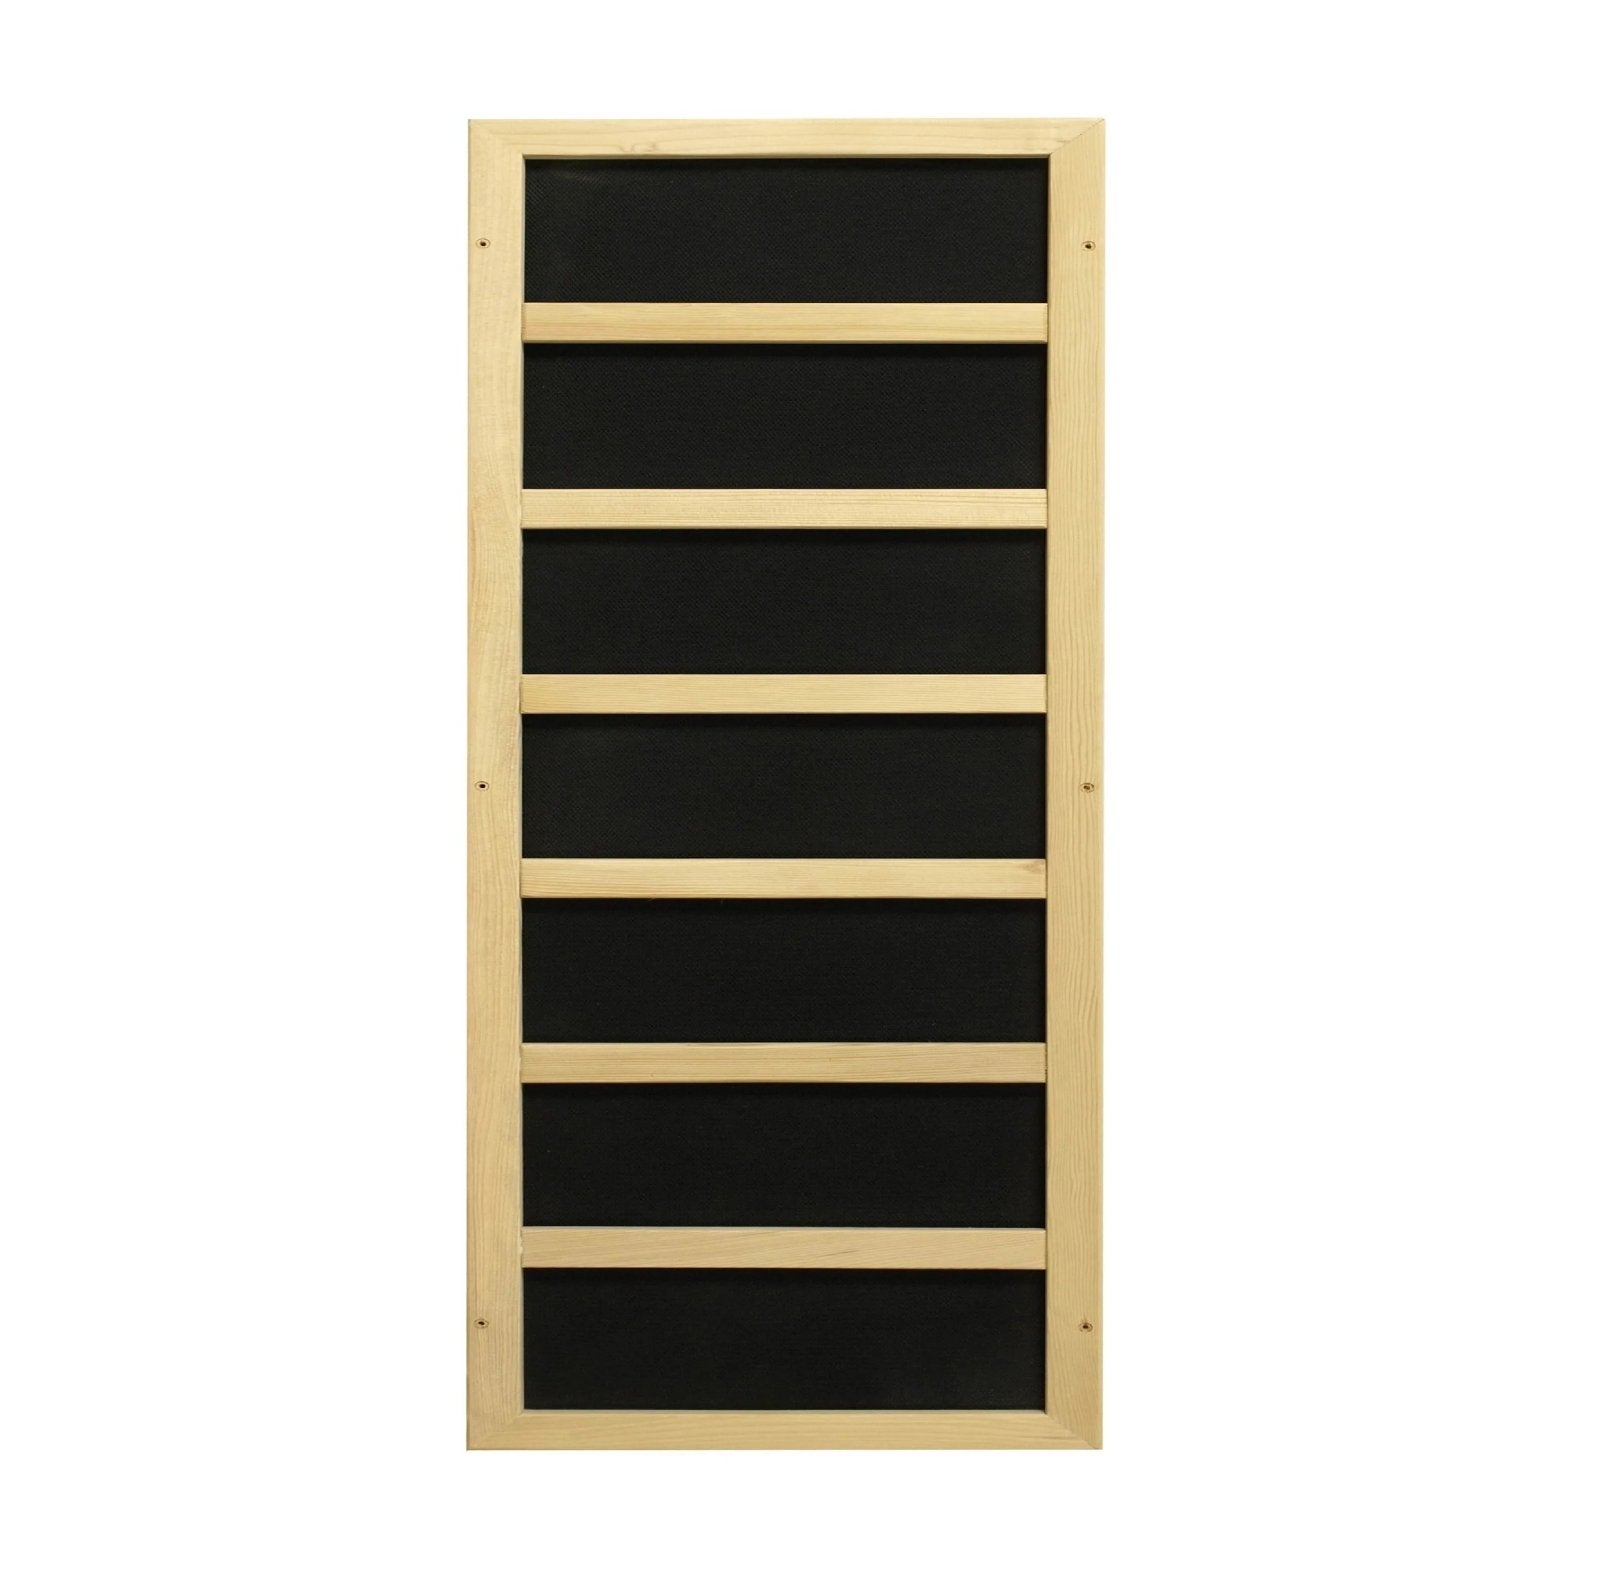 Golden Designs Ultra Low EMF 3-Person Dynamic "Vila" FAR Infrared Sauna with Hemlock Wood | Model: DYN-6315-02 - DYN-6315-02